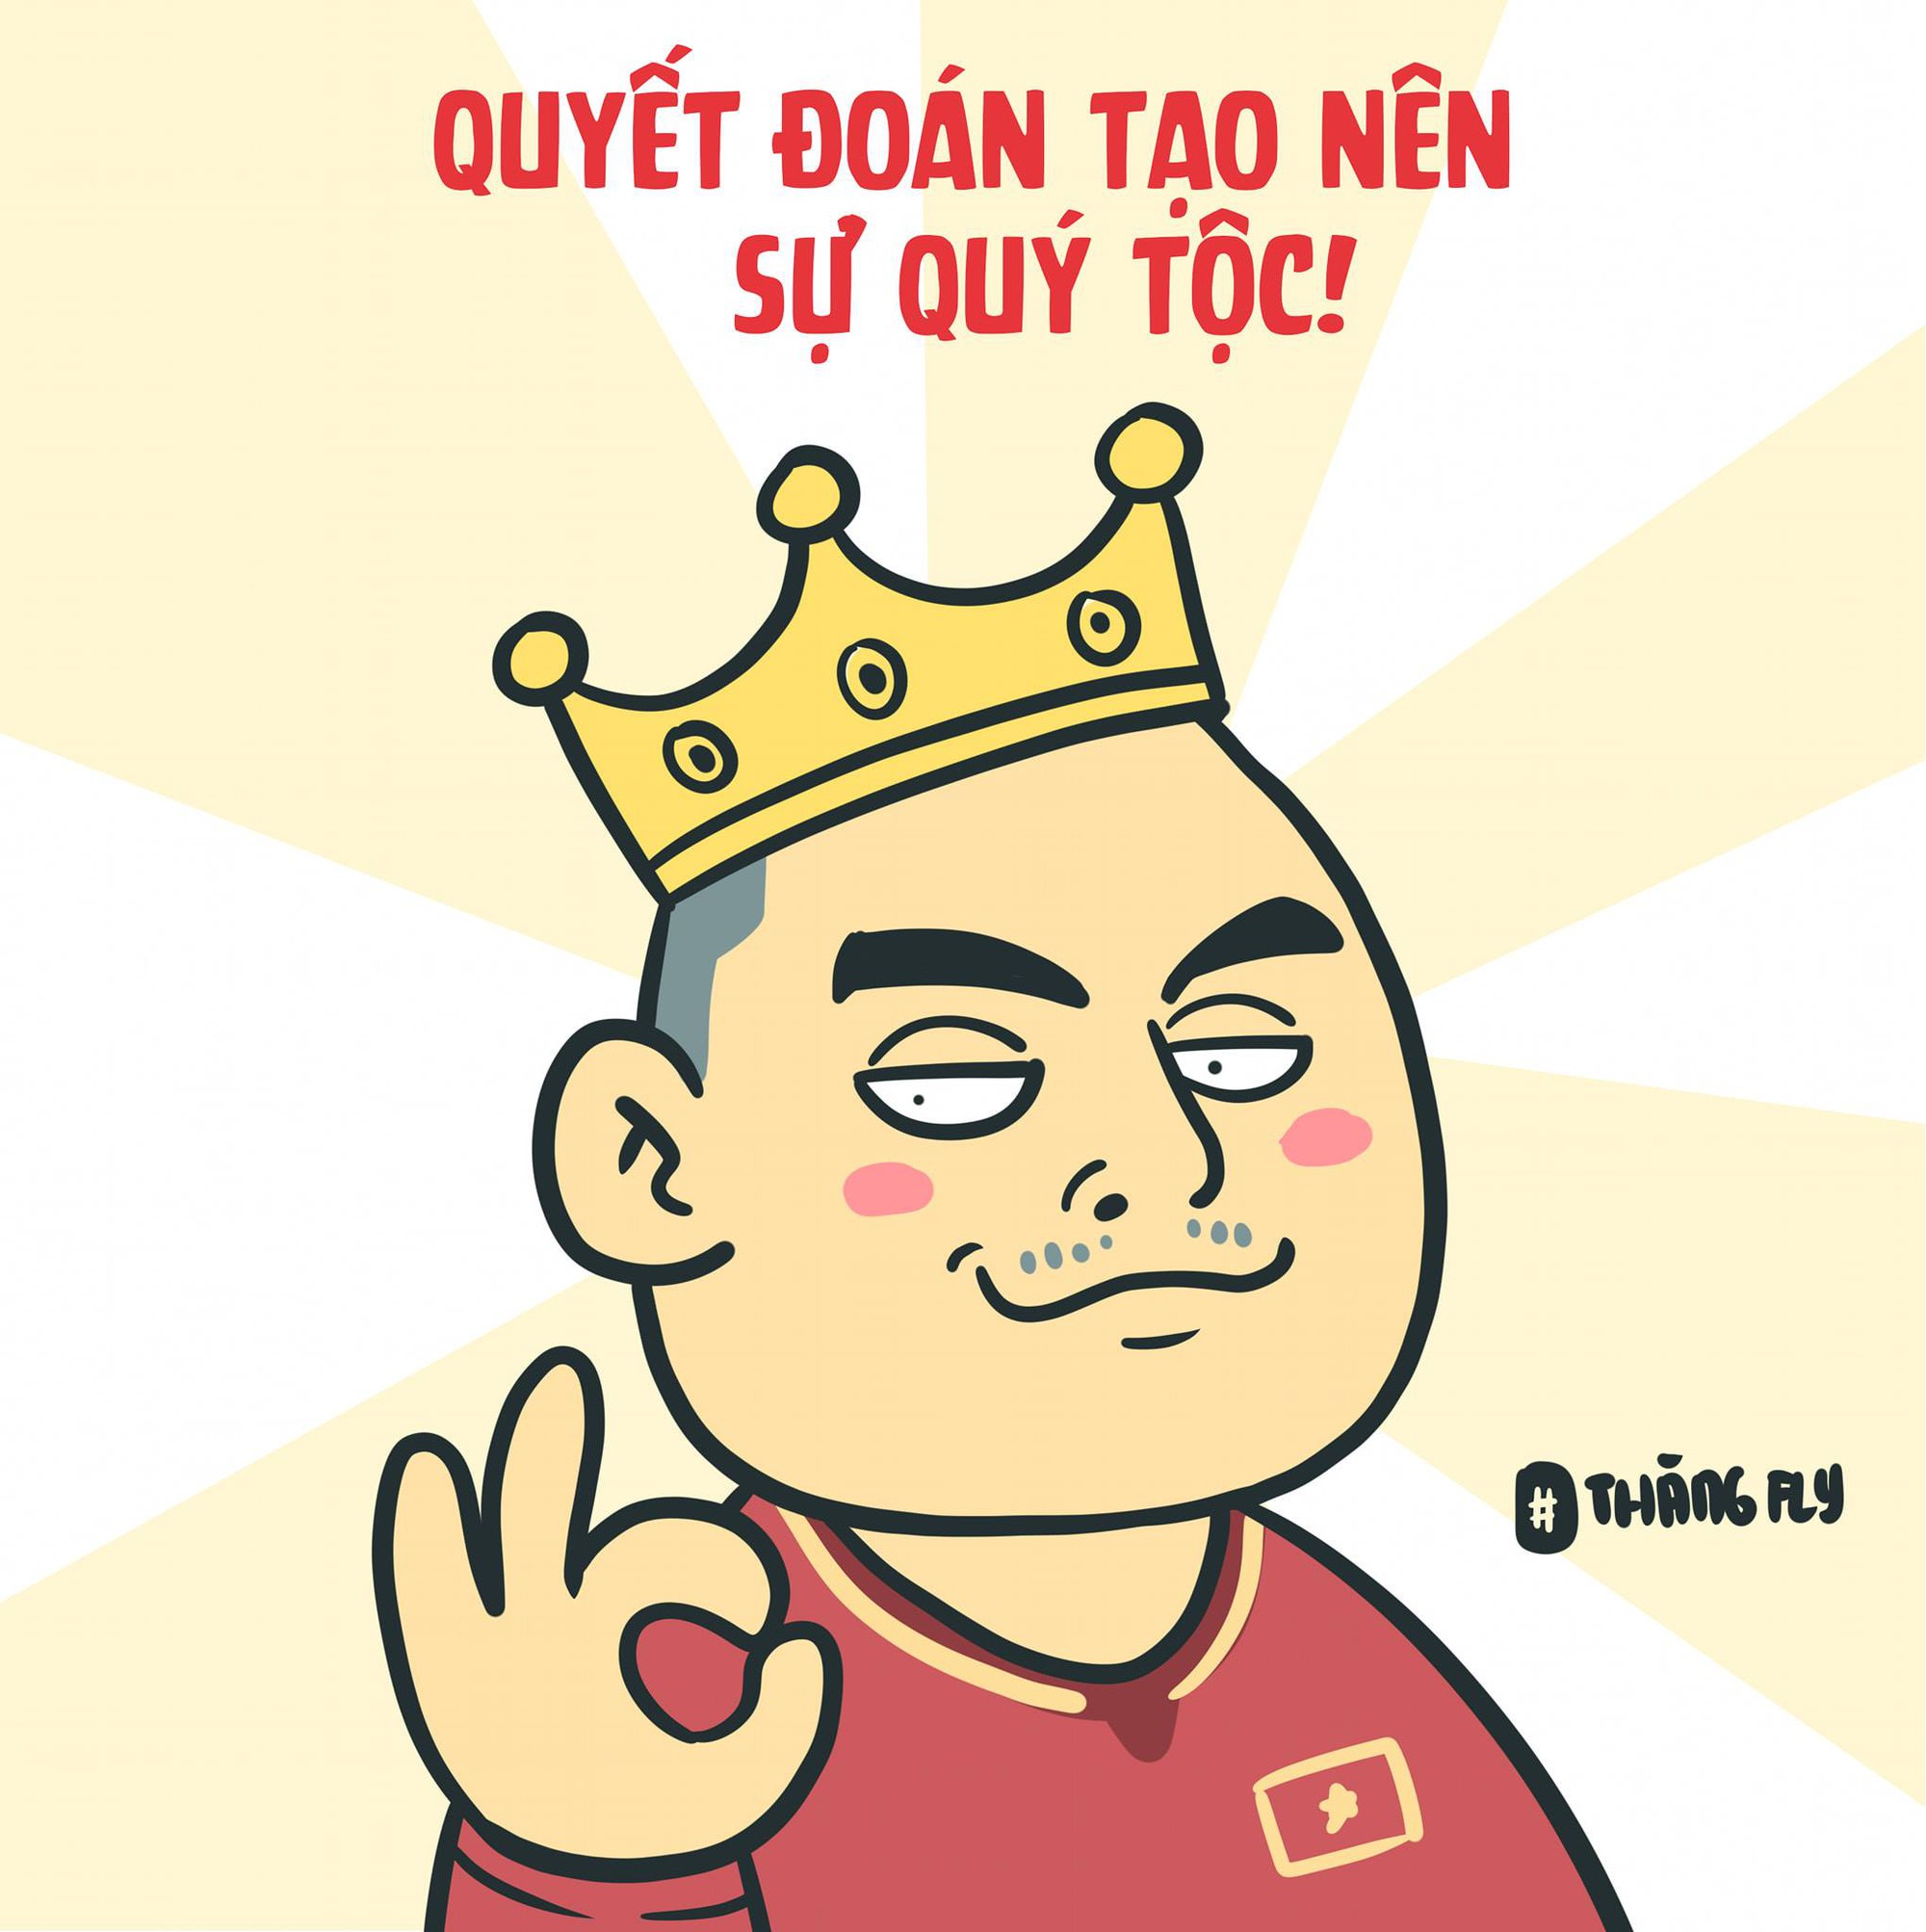 Việt Nam không giành chức vô địch King's Cup thì có sao, Đức Huy vẫn &quot;mua vui&quot; cho dân mạng đây này - Ảnh 2.